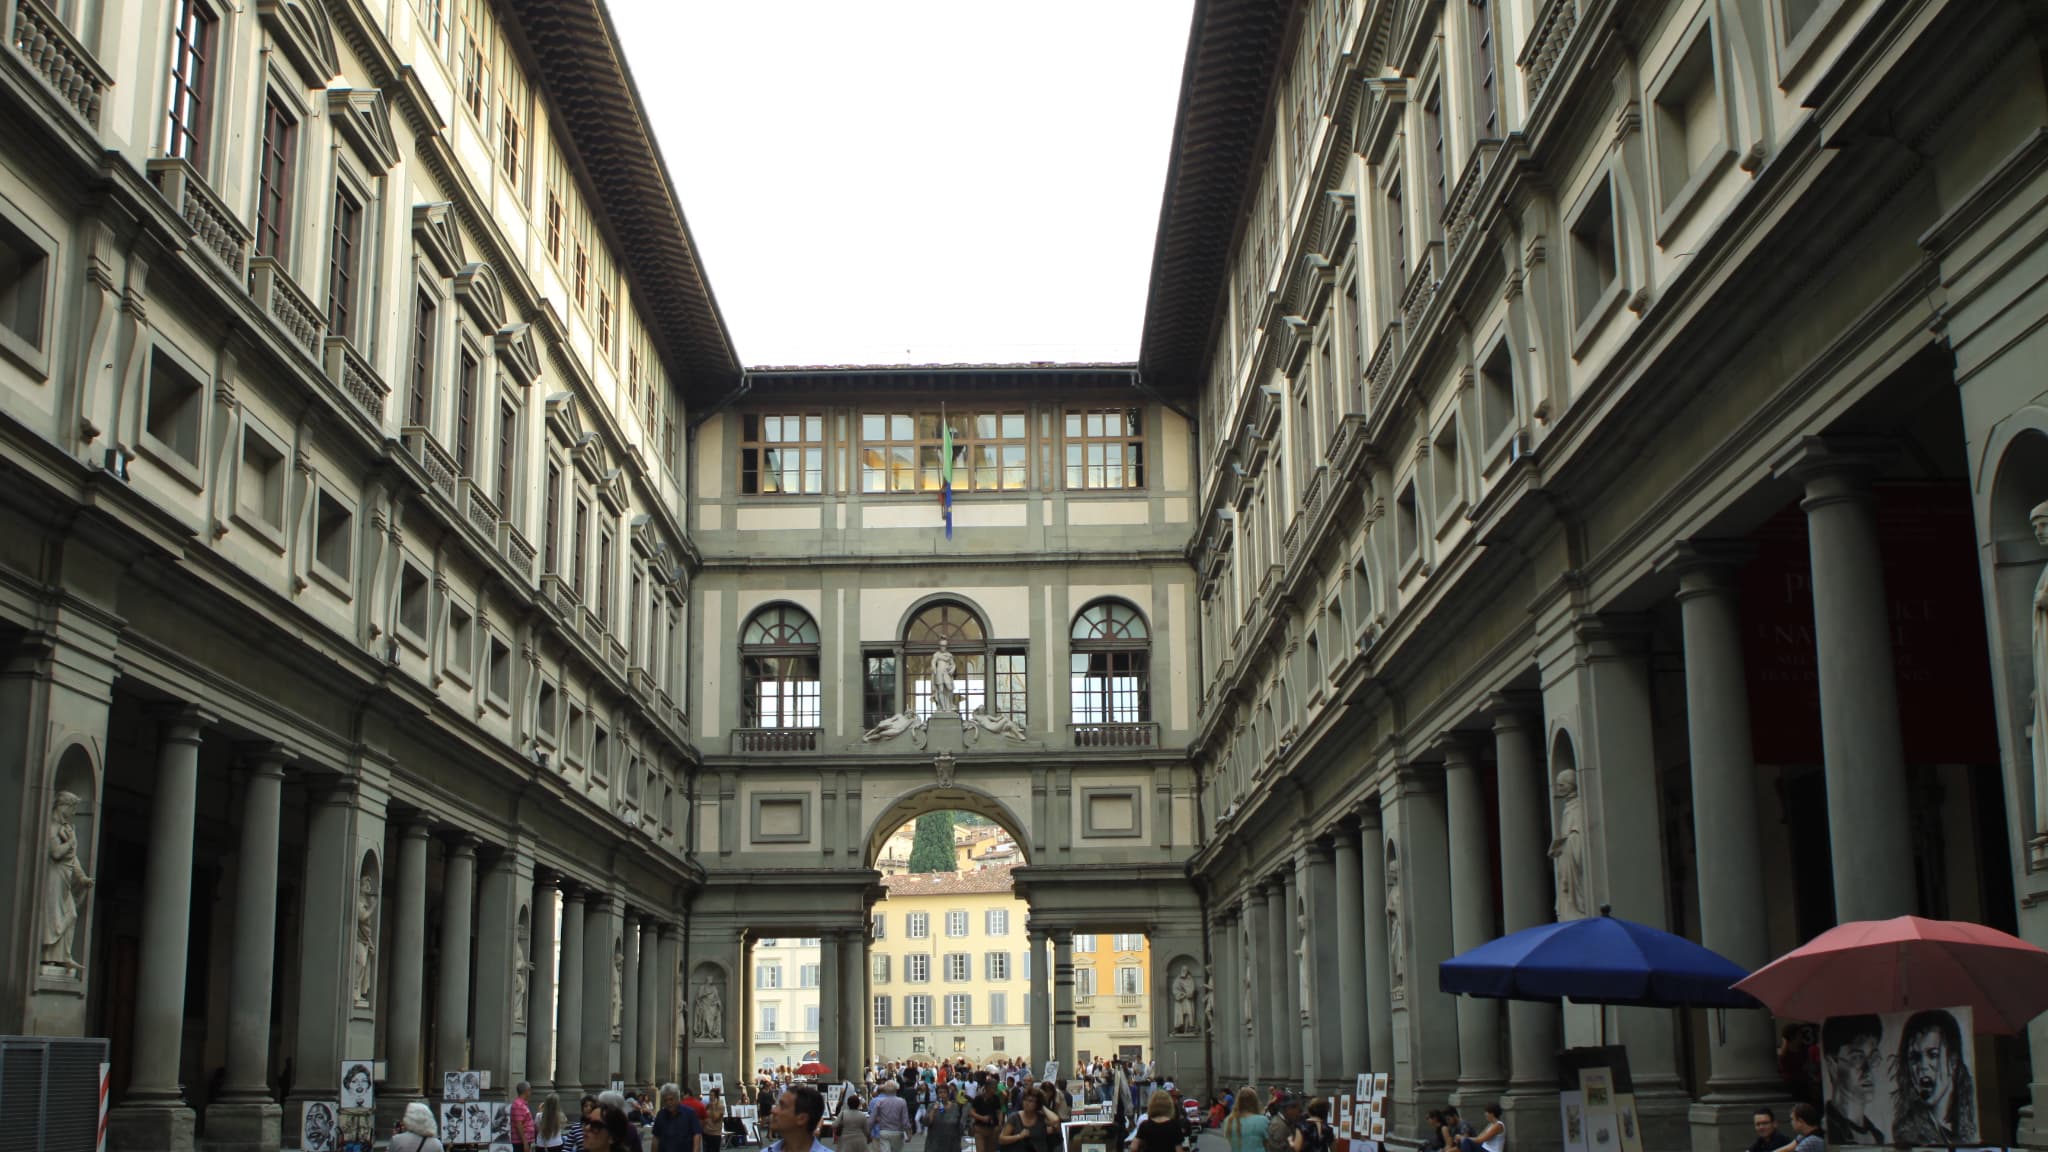 Des Militants Le Climat se Colant La Main e W de Sandro Botticelli a Firenze